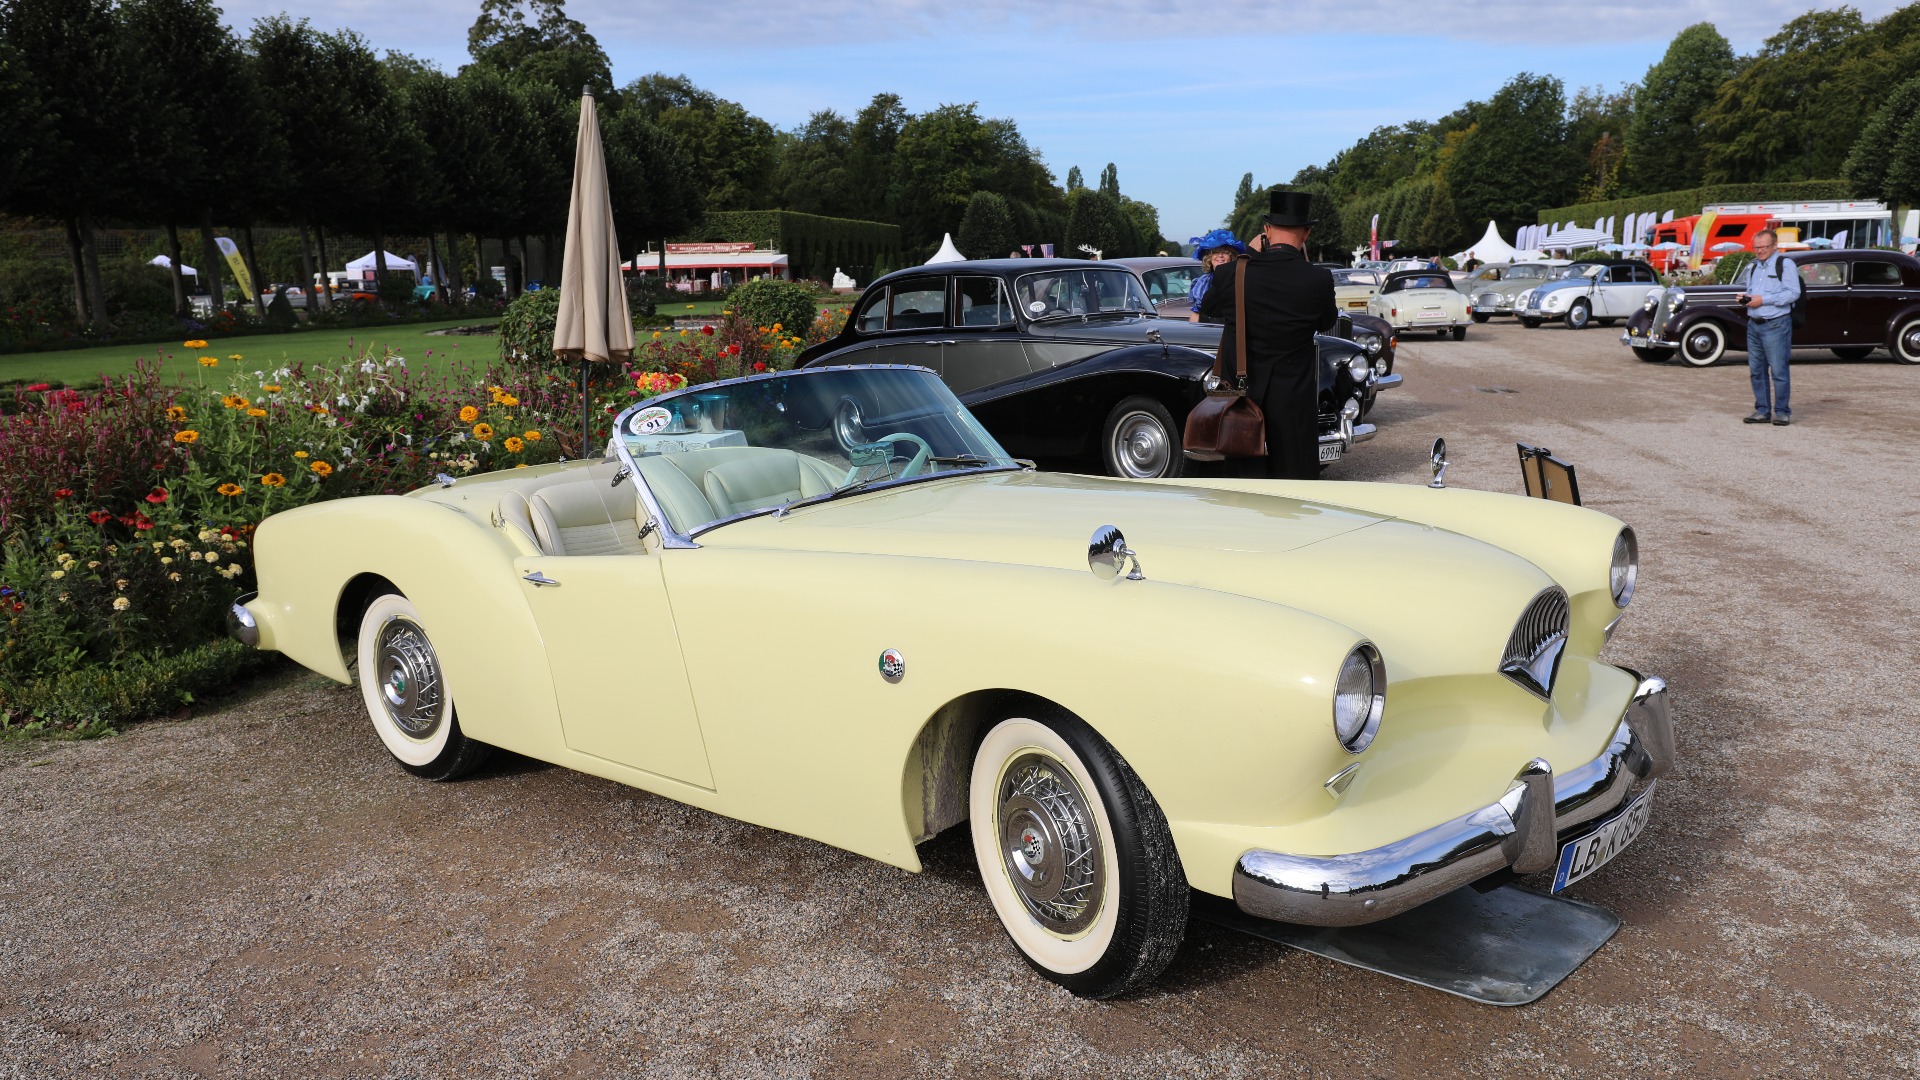 Herlig 1954 Kaiser-Darrin Roadster som dessverre ikke klarte å bli noen Corvette-konkurrent. 